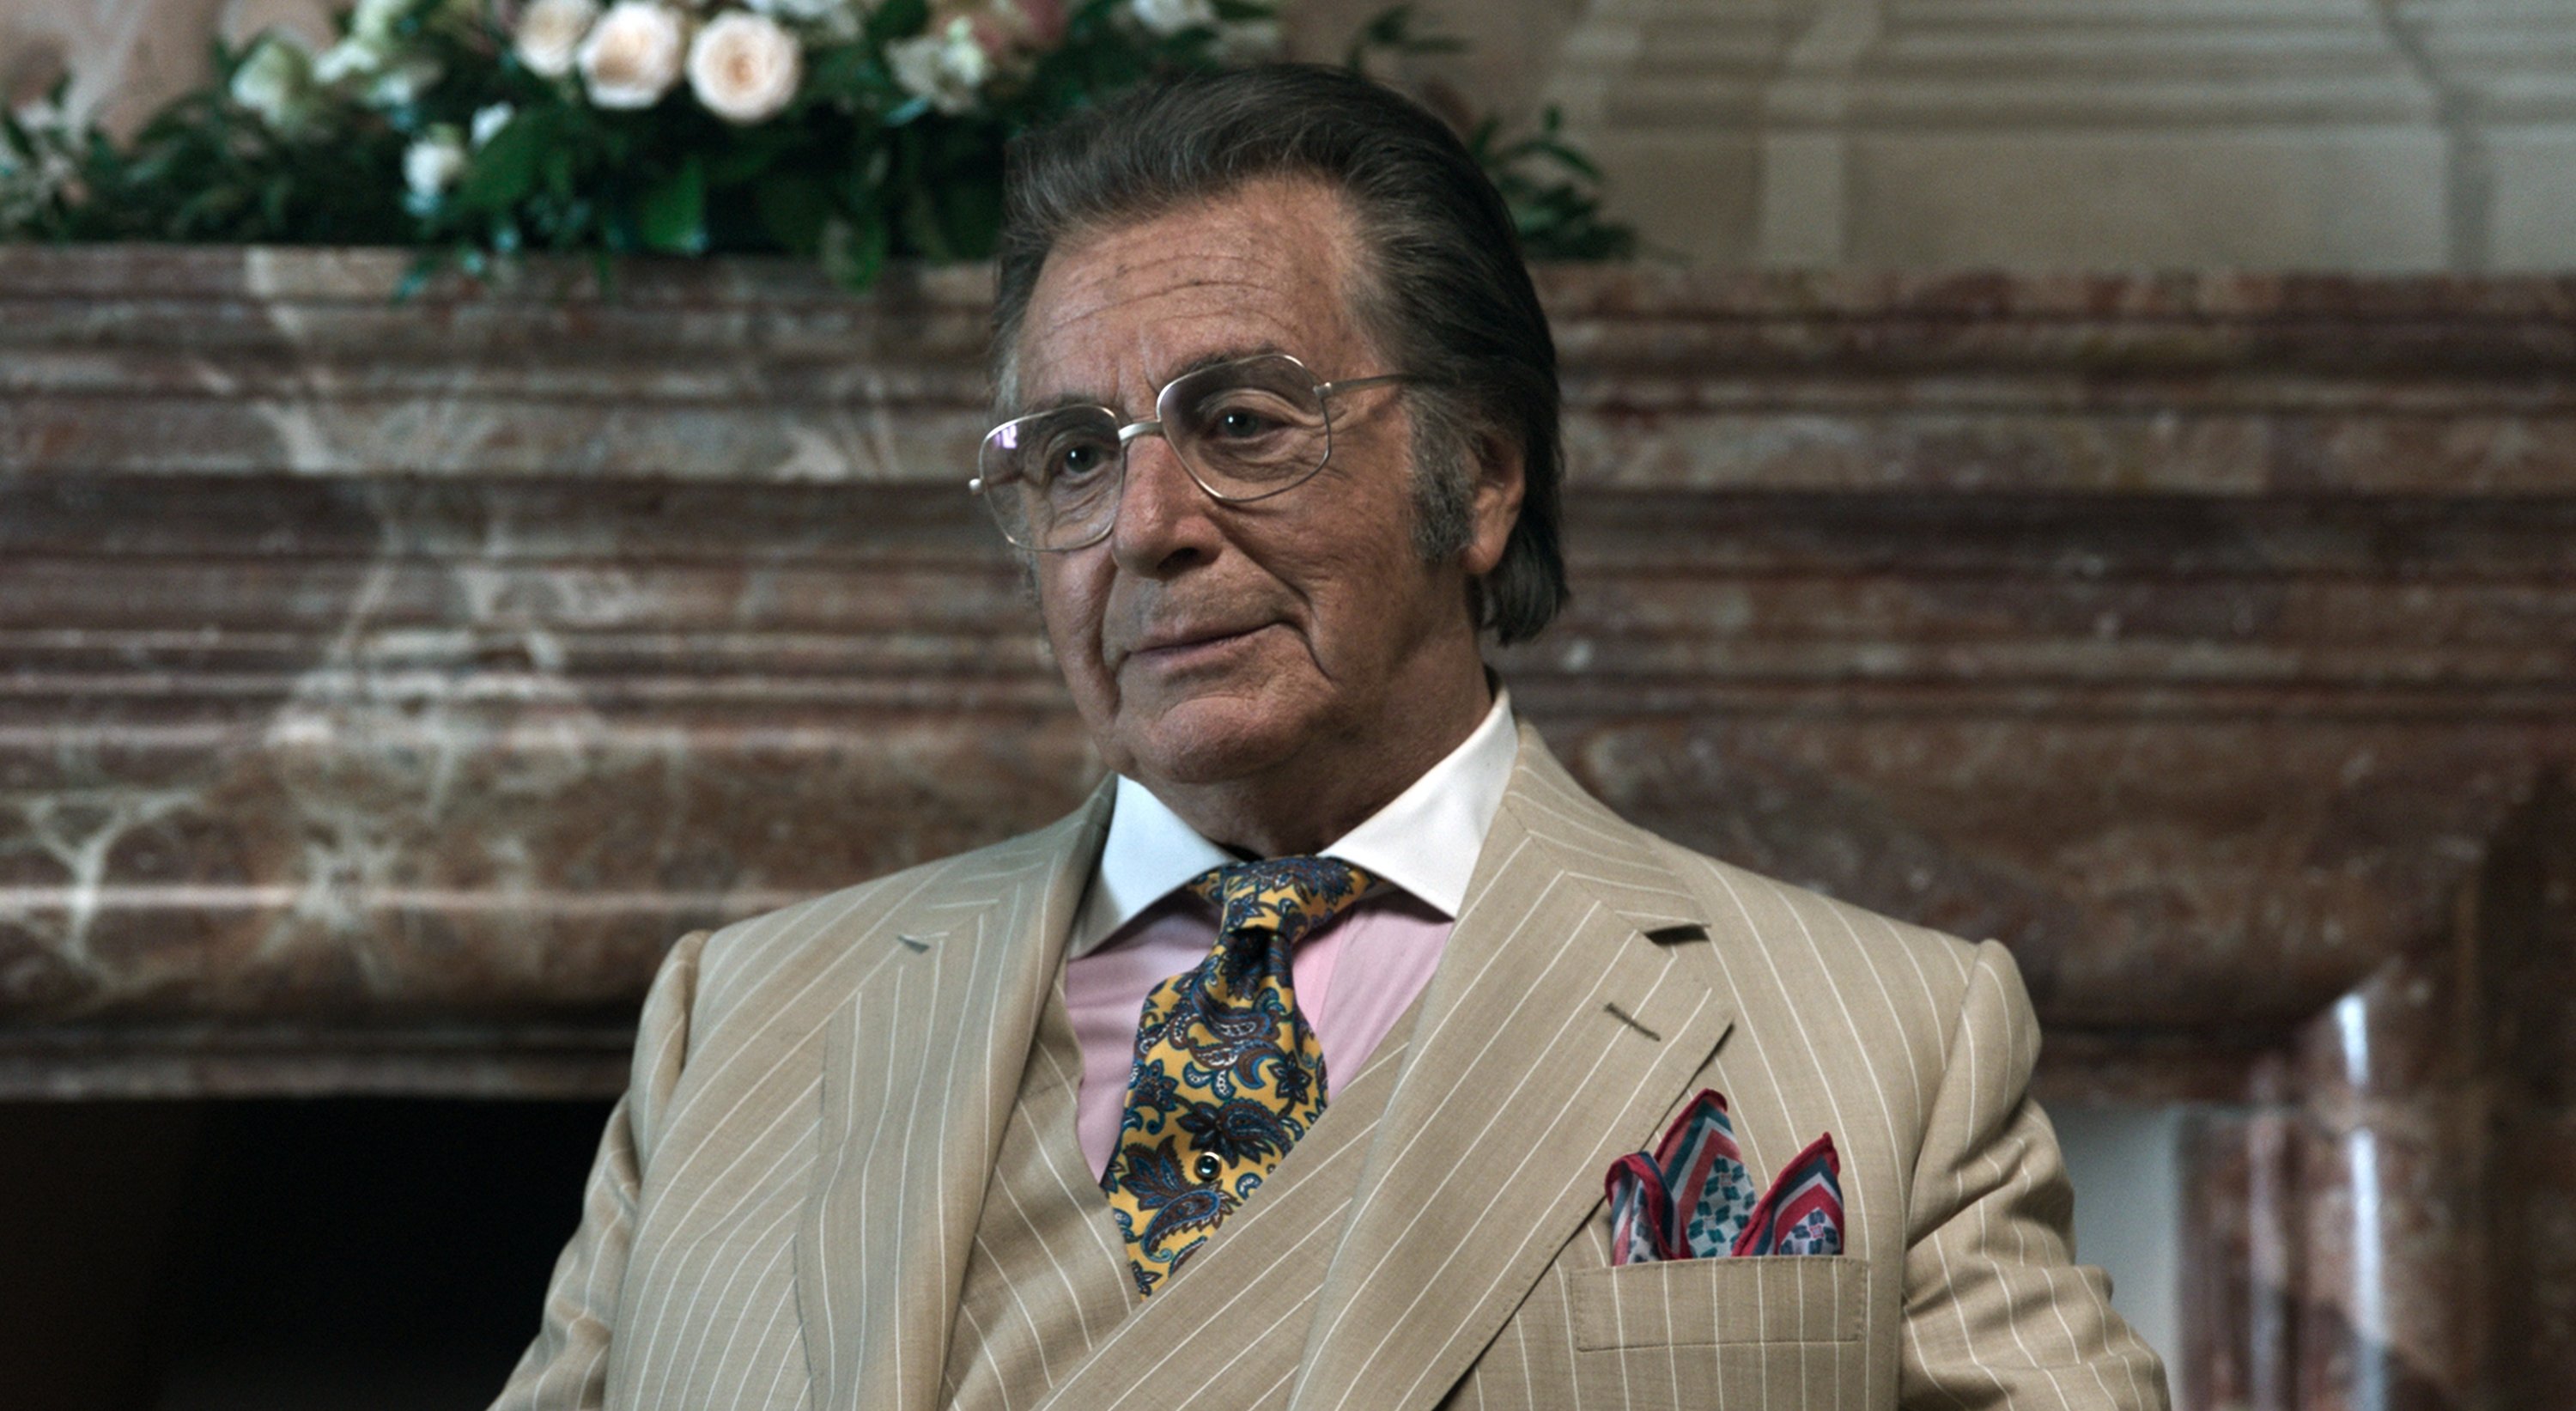 Al Pacino as Aldo Gucci, in a scene from the film 